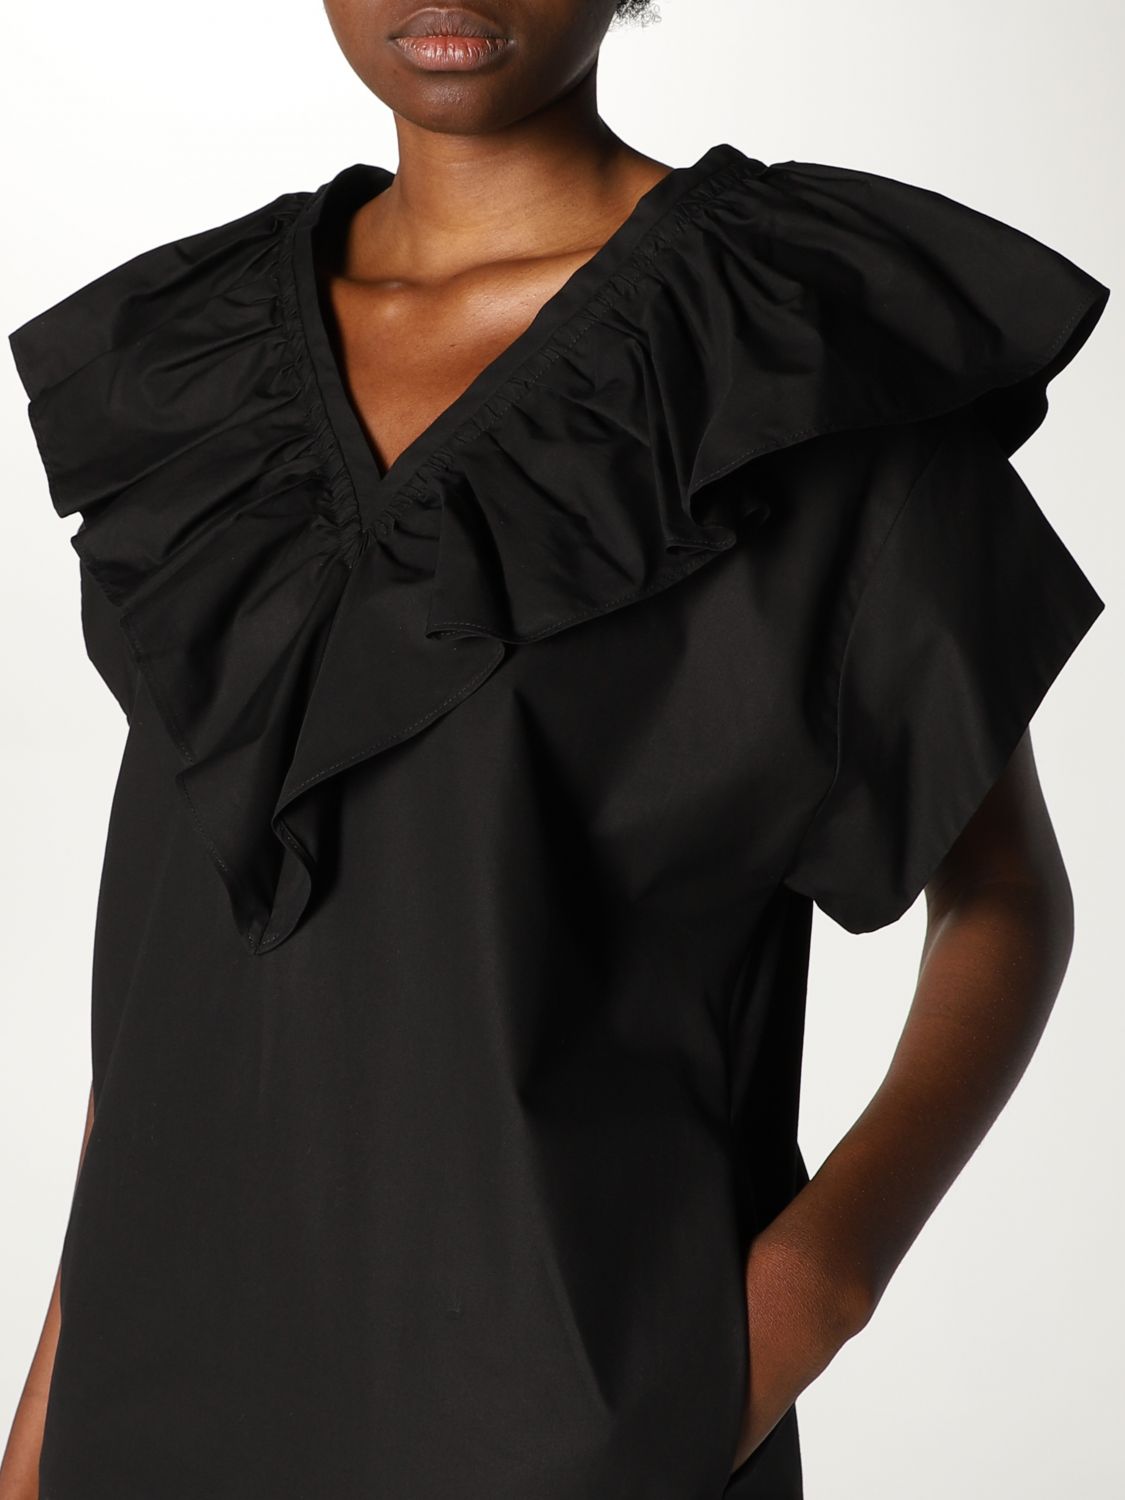 Dress Tela: Tela dress for women black 3